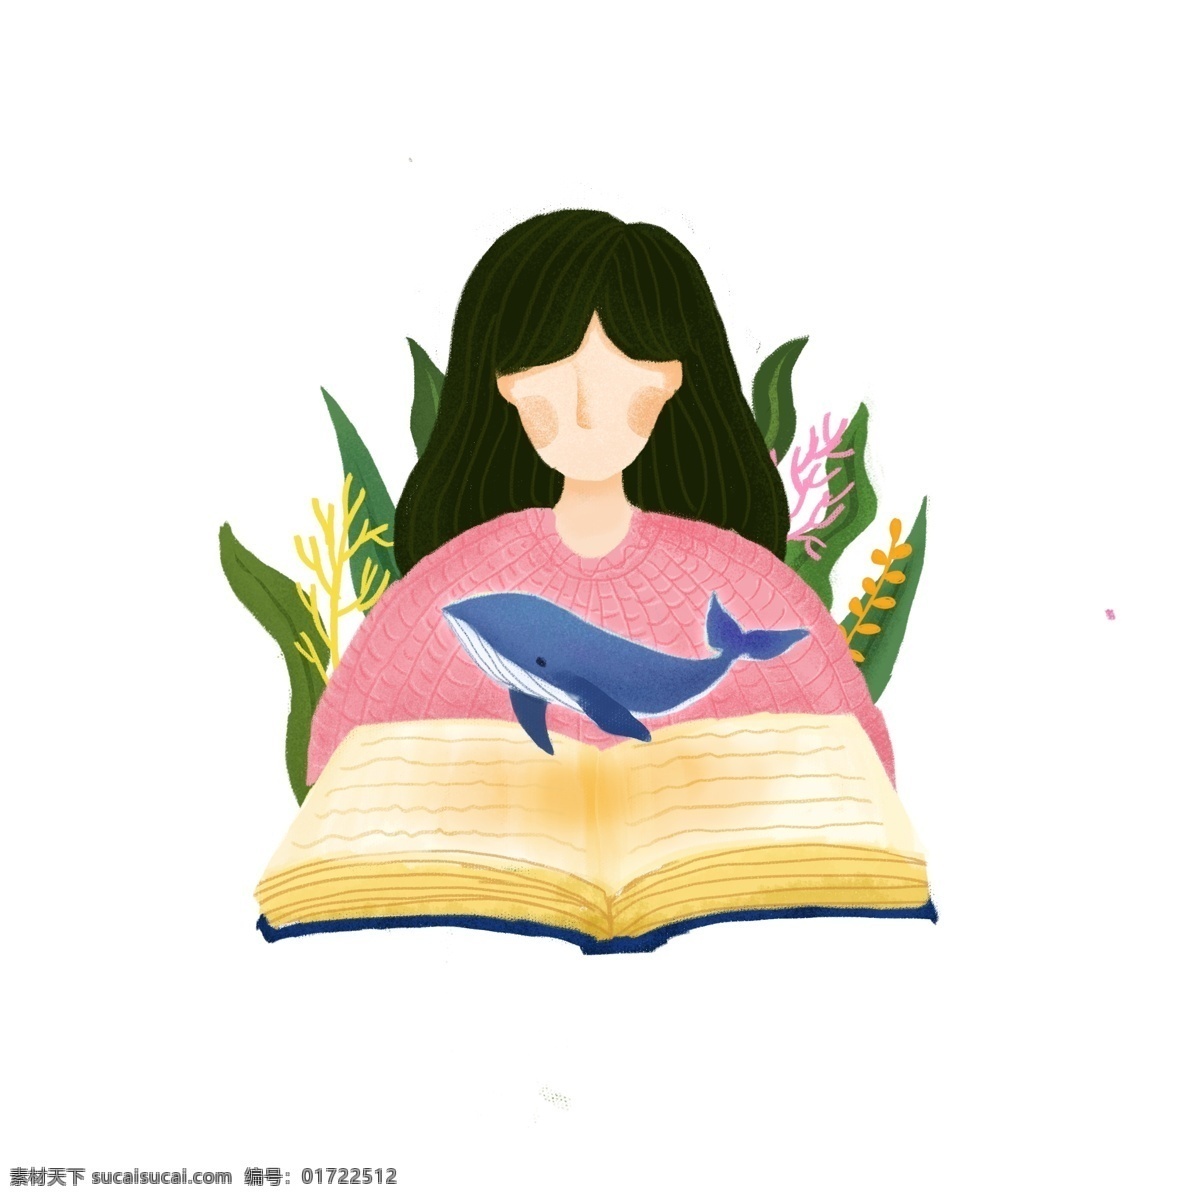 少女 女生 青年 读书 学习 阅读 可爱 创意 卡通 插画 书海 学生 书本 书 海洋 鲸鱼 海草 植物 动物 小清新